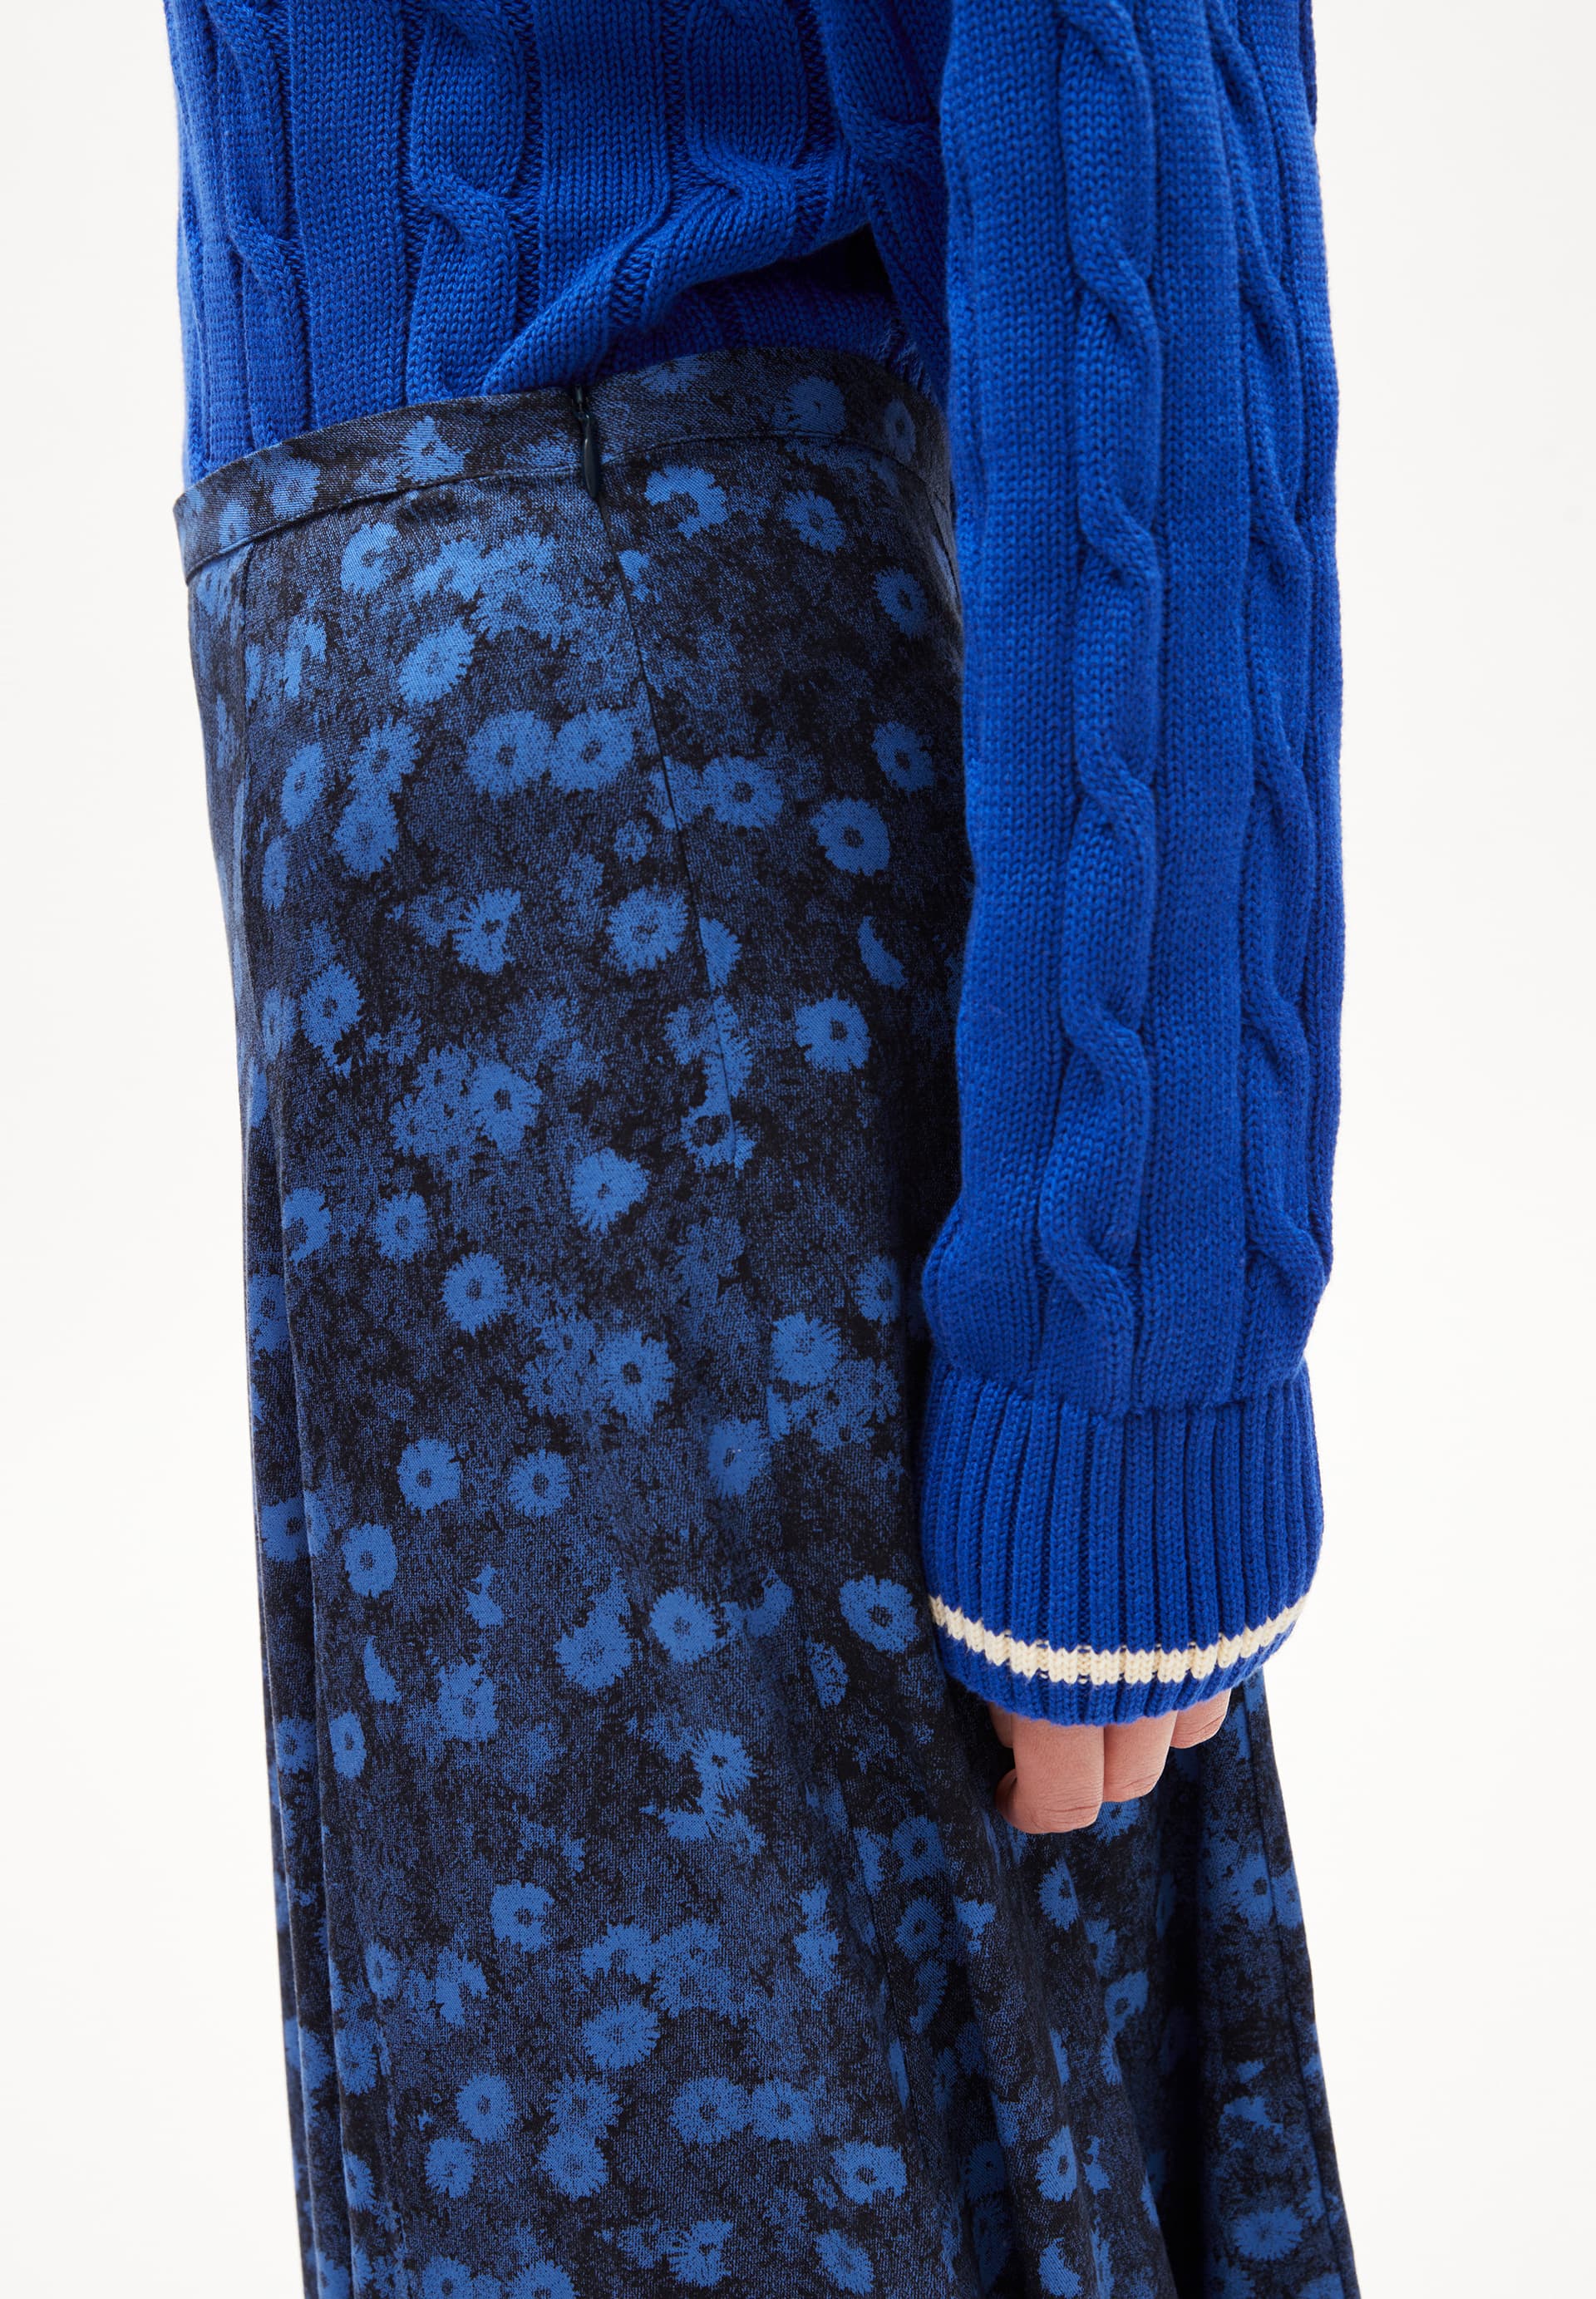 MIKASAAMI MILLES FLEURS Woven Skirt Regular Fit made of LENZING™ ECOVERO™ Viscose